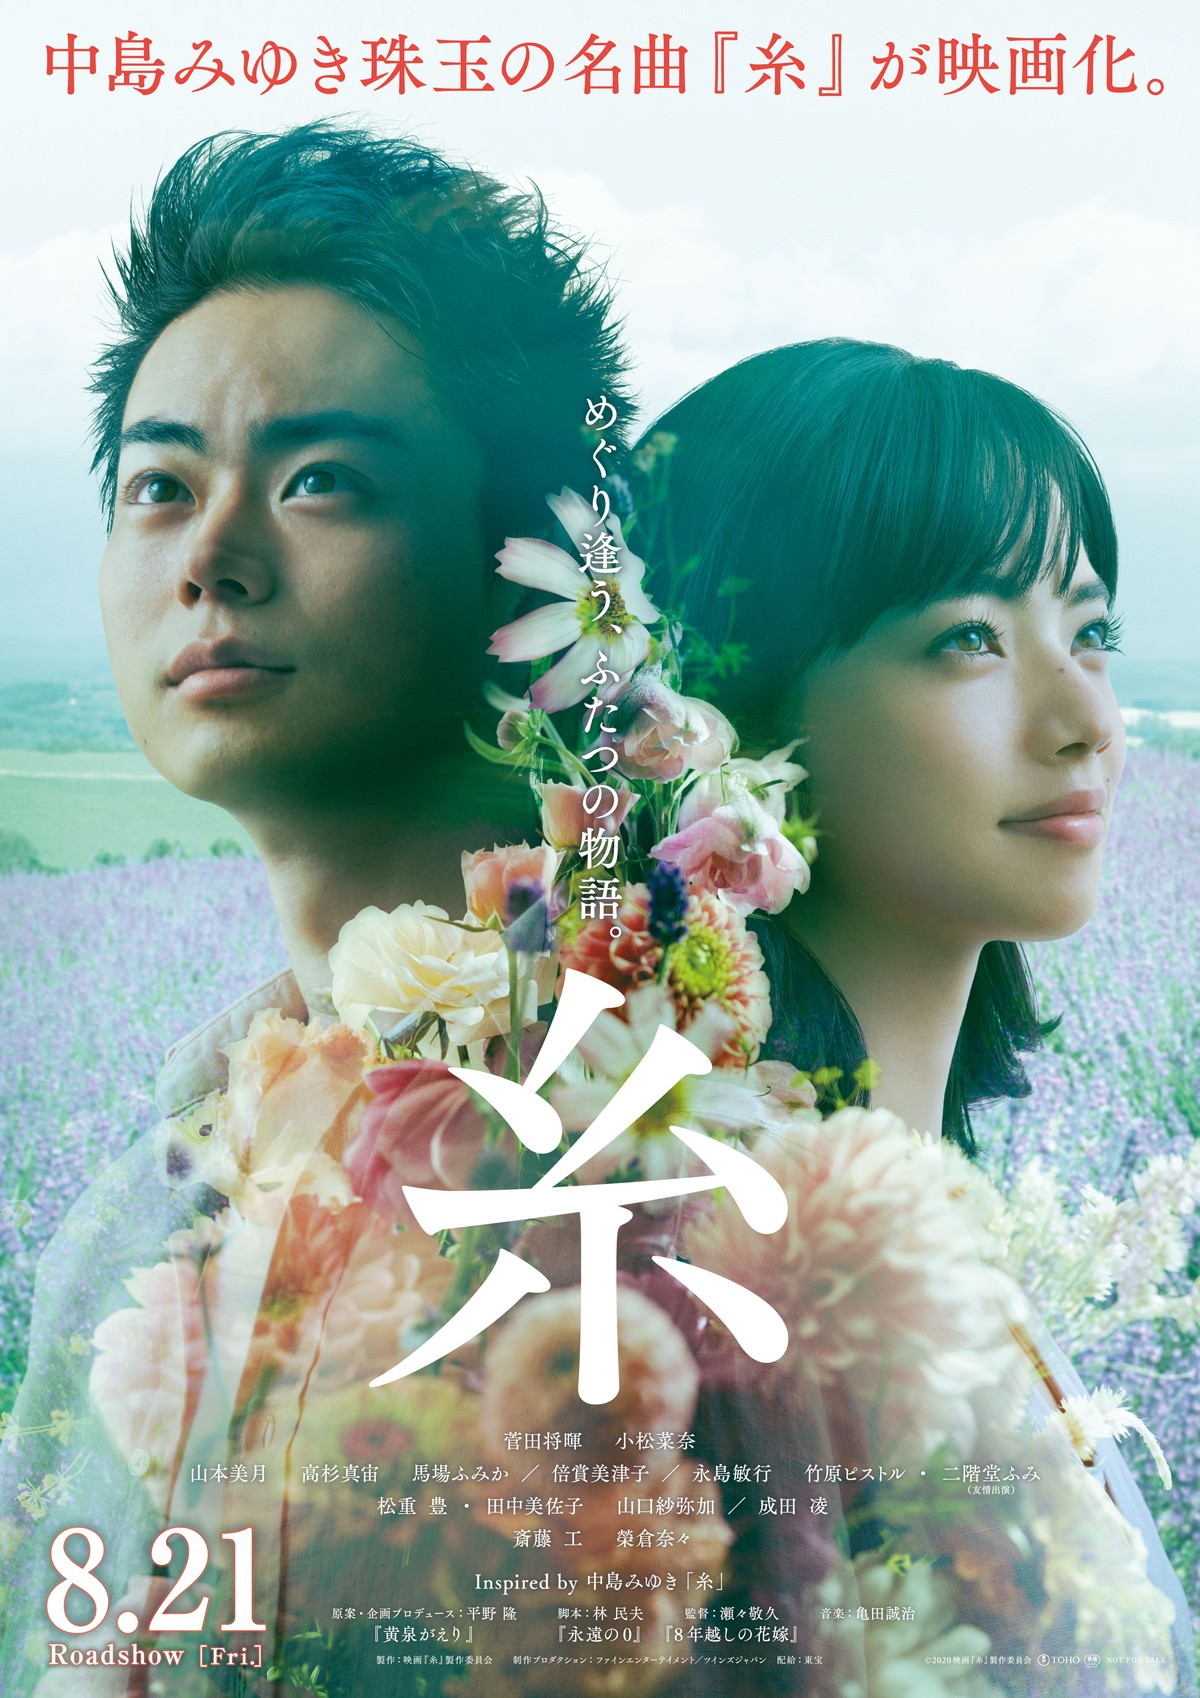 菅田将暉×小松菜奈『糸』、8.21公開へ「この映画が人と人とをつなぎますように」